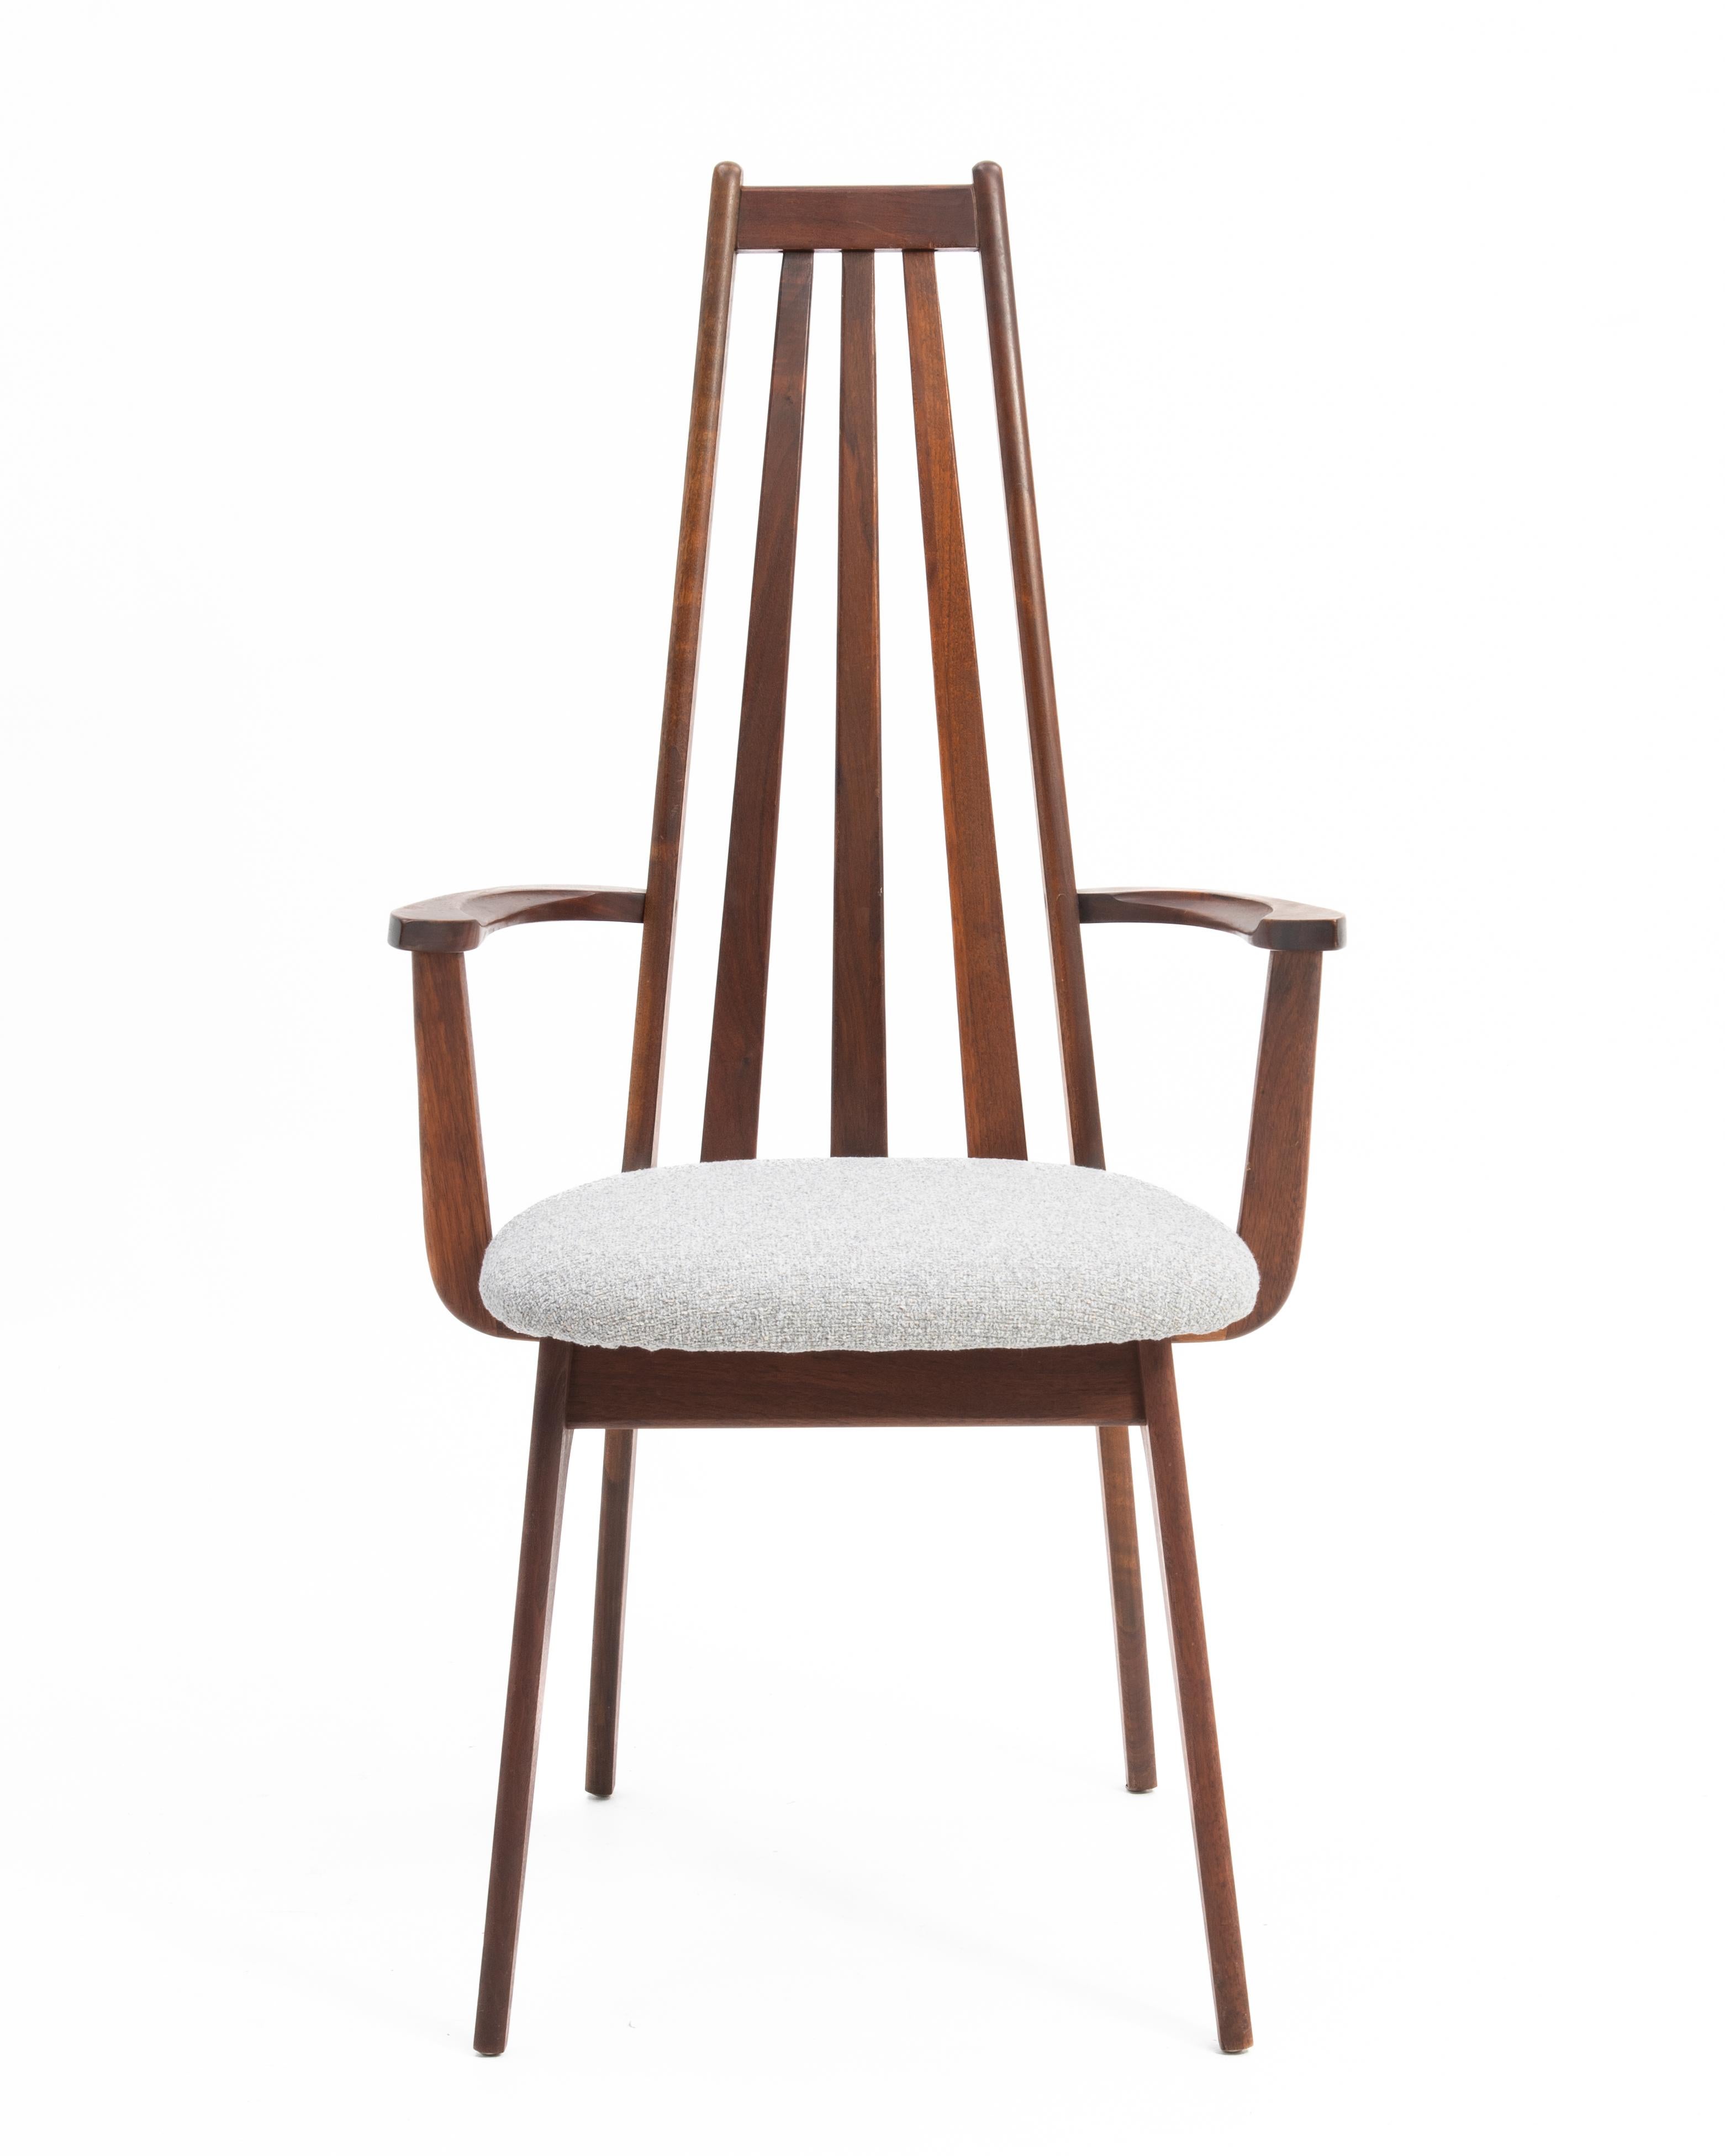 Ensemble de quatre chaises de salle à manger à haut dossier en noyer, conçues par Henry P. Glass pour Richbilt Manufacturing de Cincinnati, Ohio. Ces chaises sont généralement trouvées non marquées et attribuées à Adrian Pearsall pour Craft